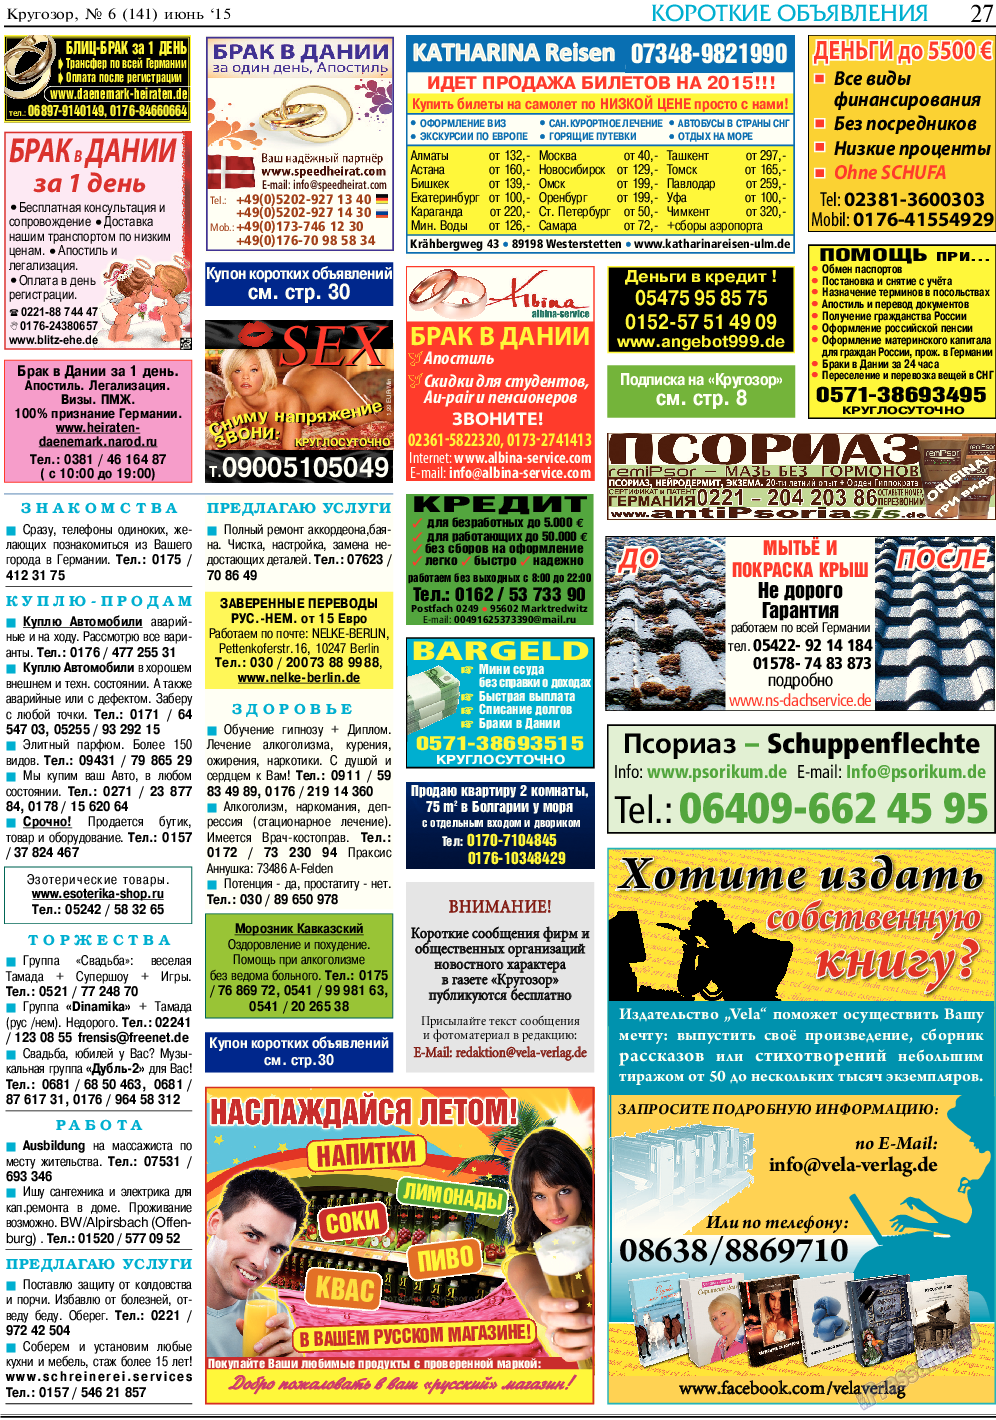 Кругозор, газета. 2015 №6 стр.27